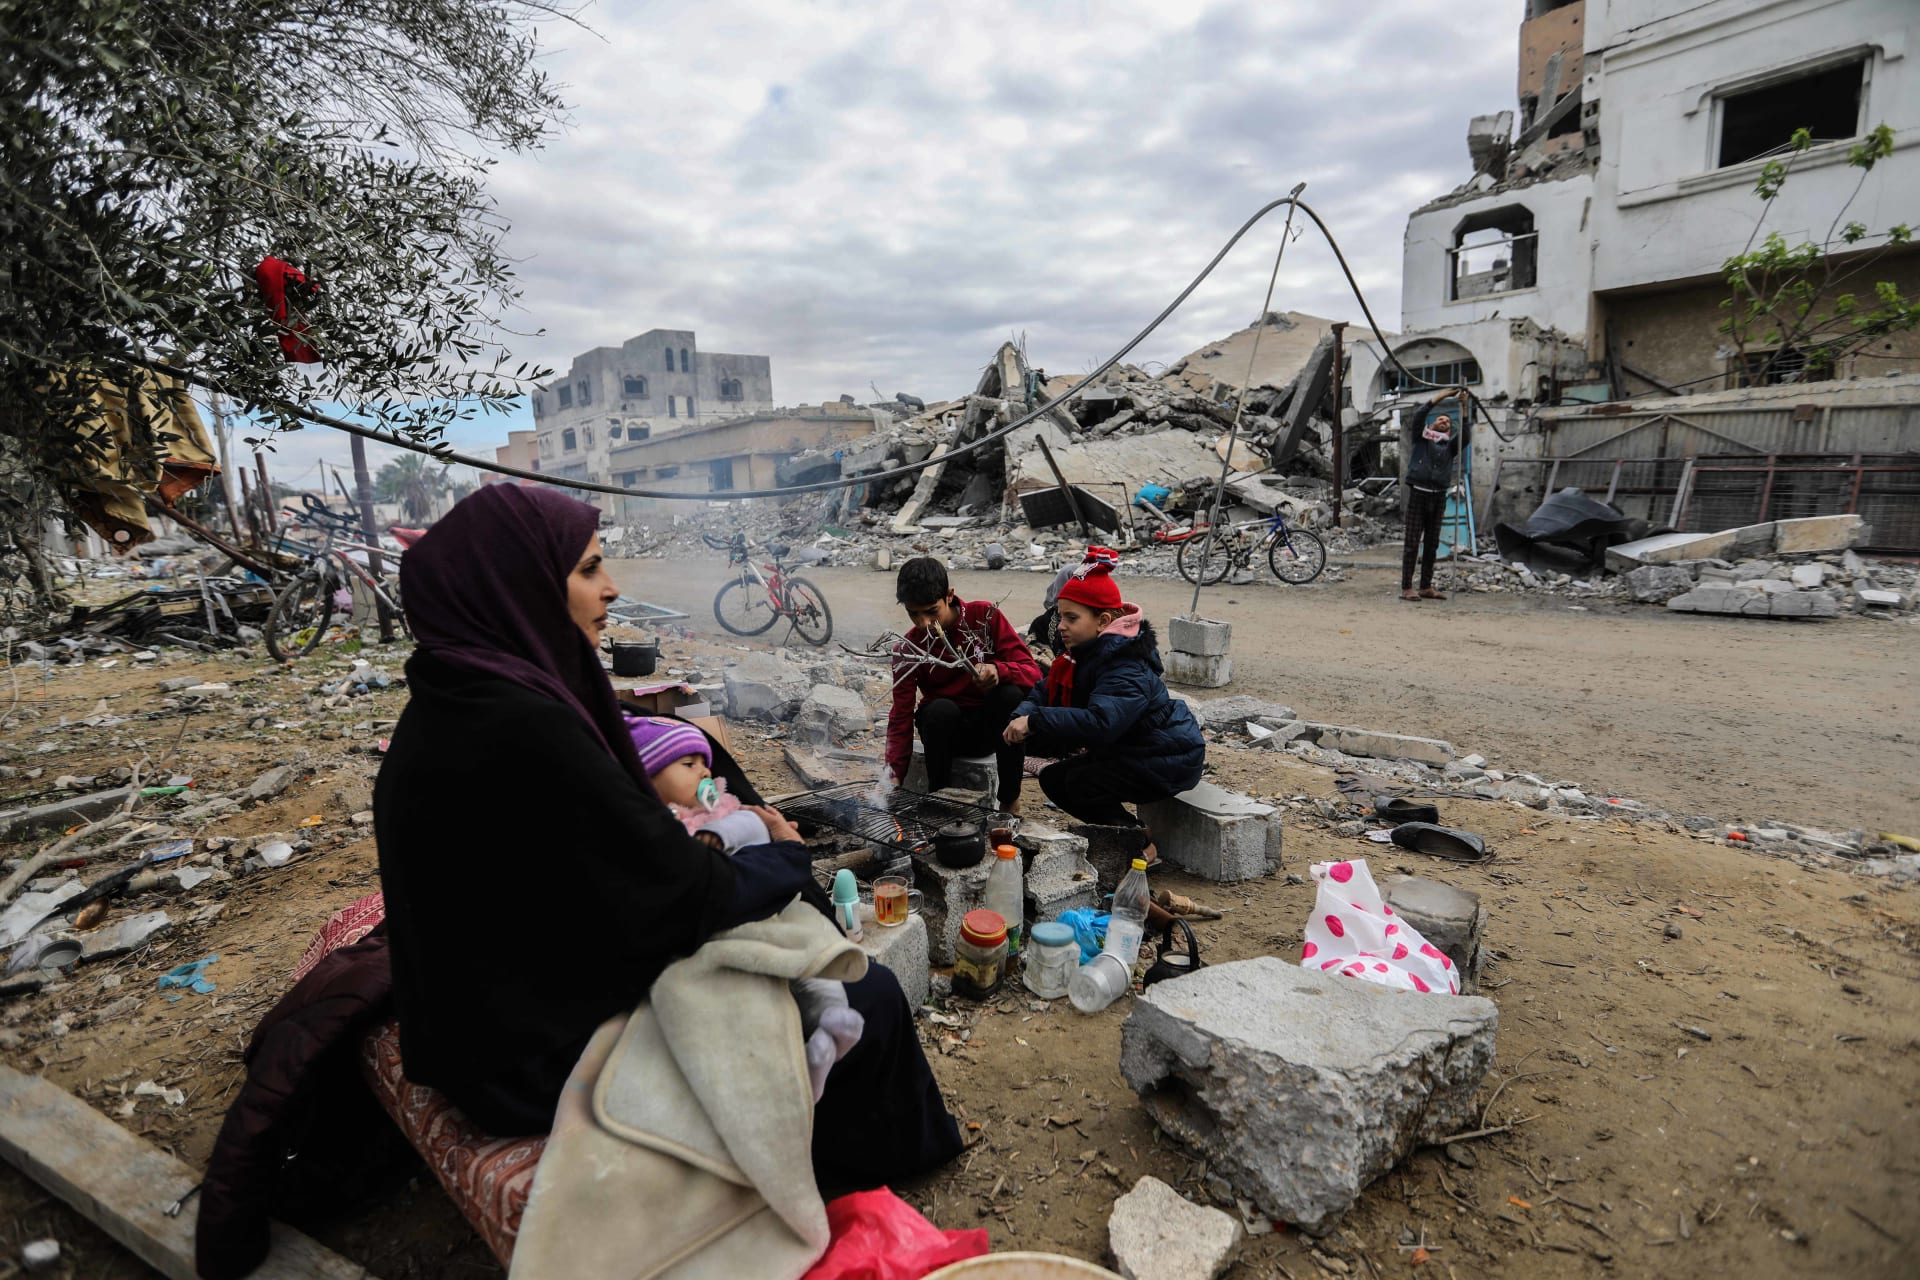 27 منظمة دولية تطلق نداء من الأردن لـ"تكثيف جهود الإغاثة" لغزة: "الوضع كارثي"